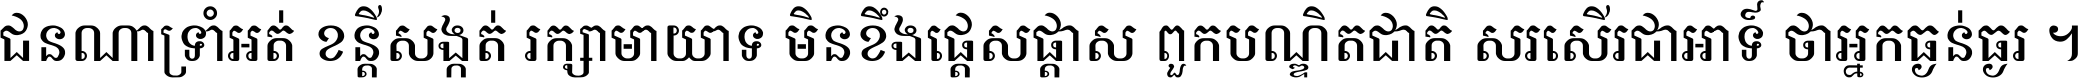 Kh Ang KanTout